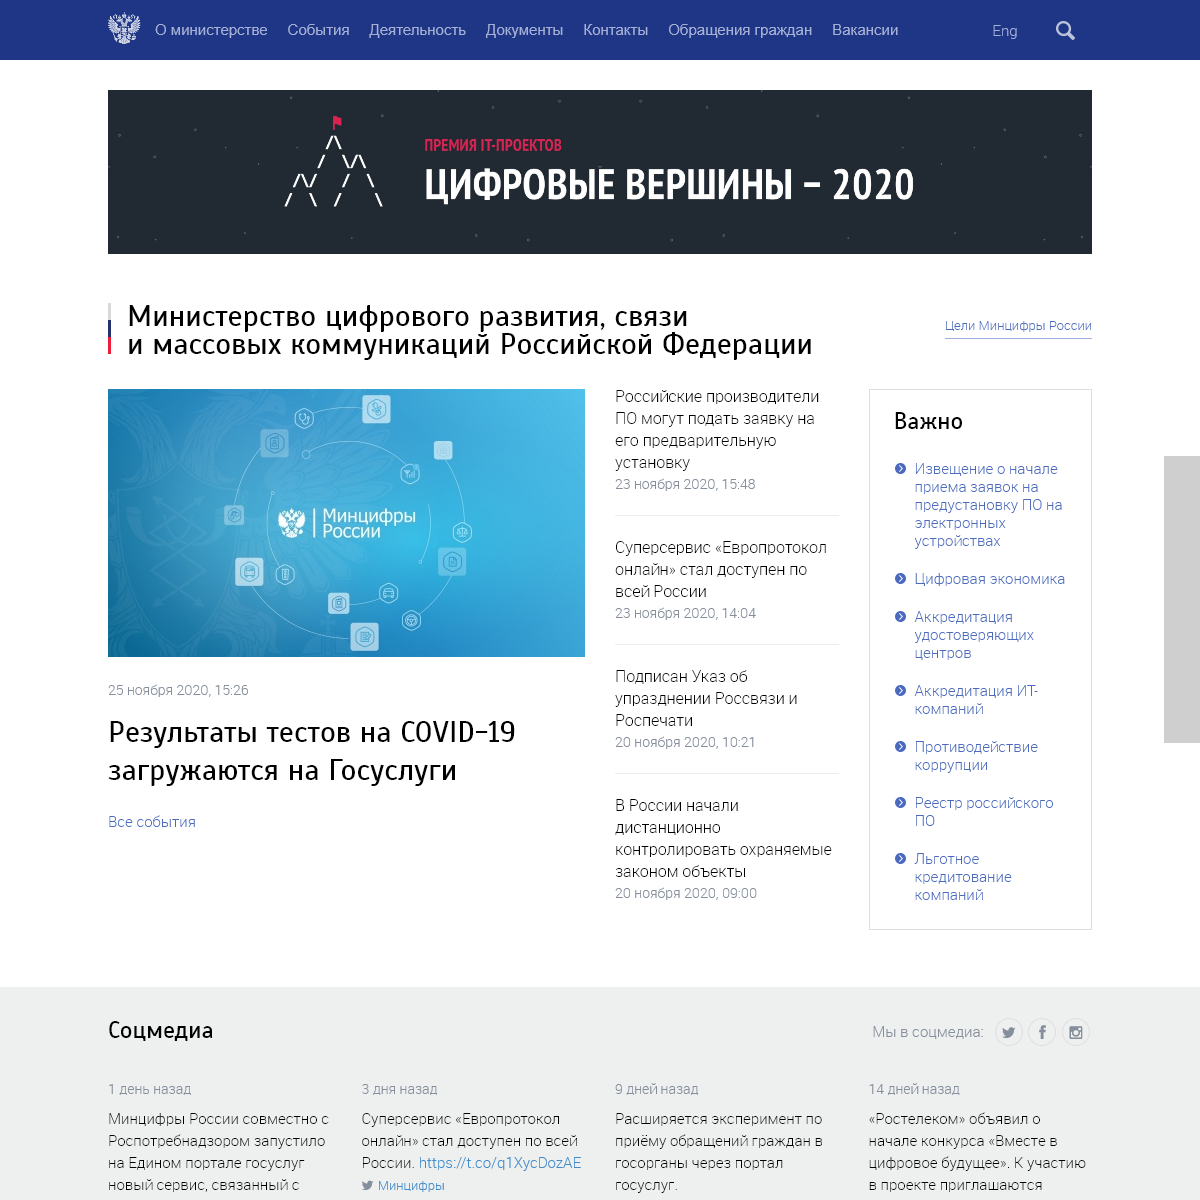 A complete backup of digital.gov.ru